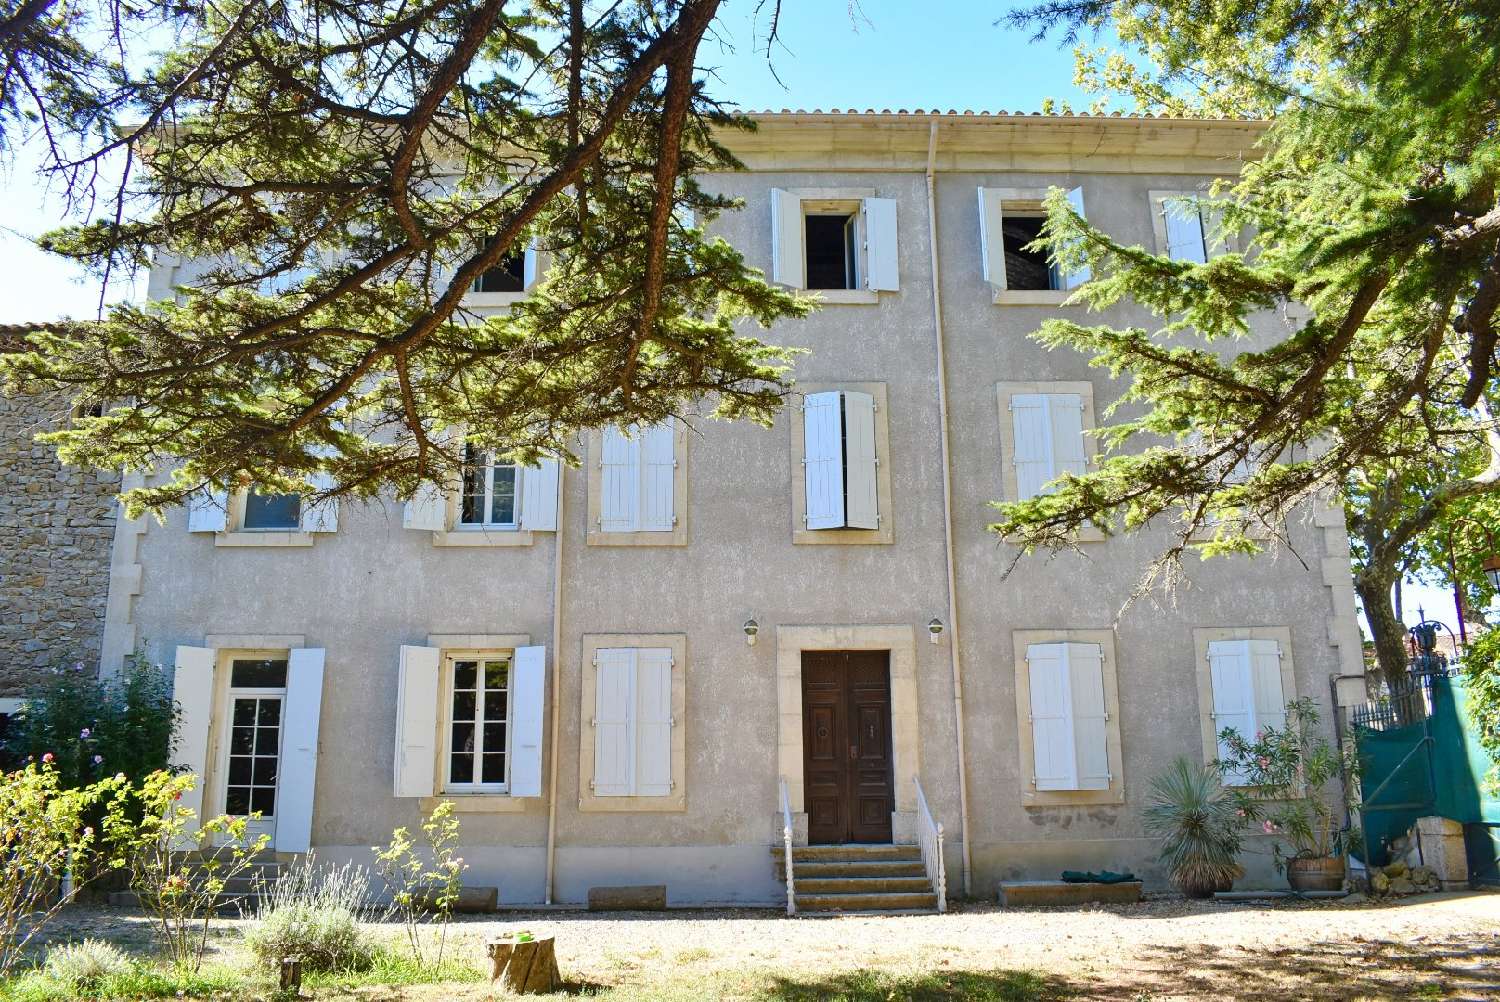  à vendre maison Narbonne Aude 4